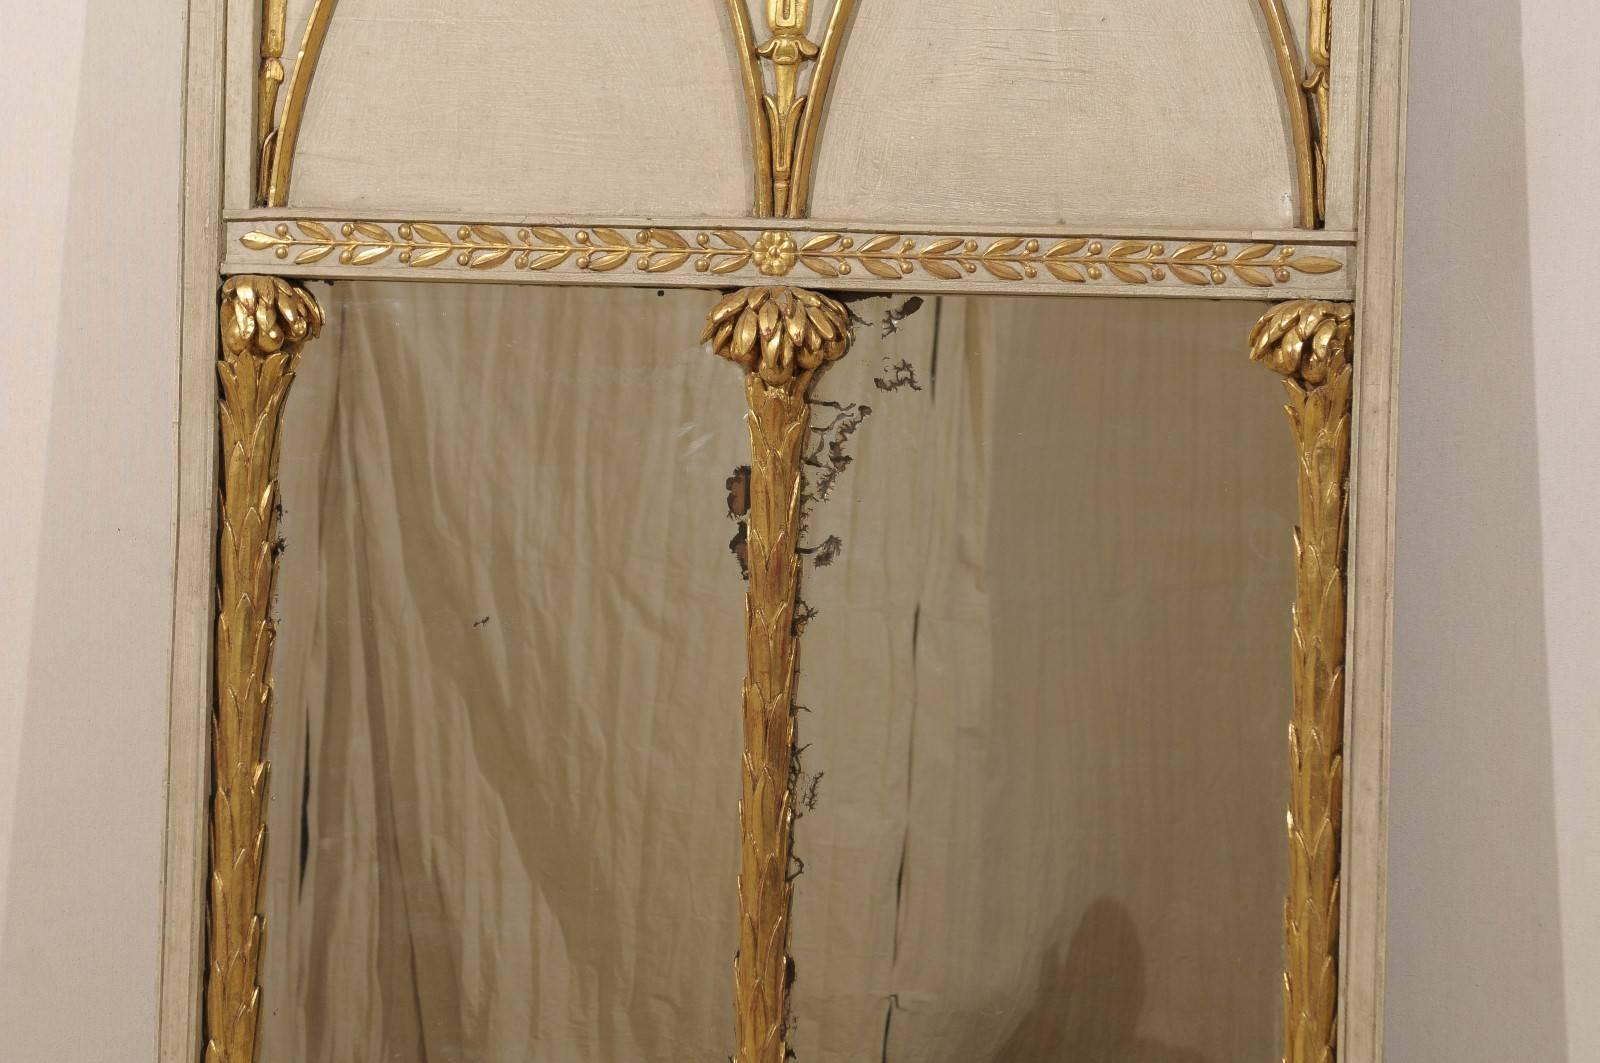 19th Century English Regency Period Trumeau Mirror with Giltwood Motifs